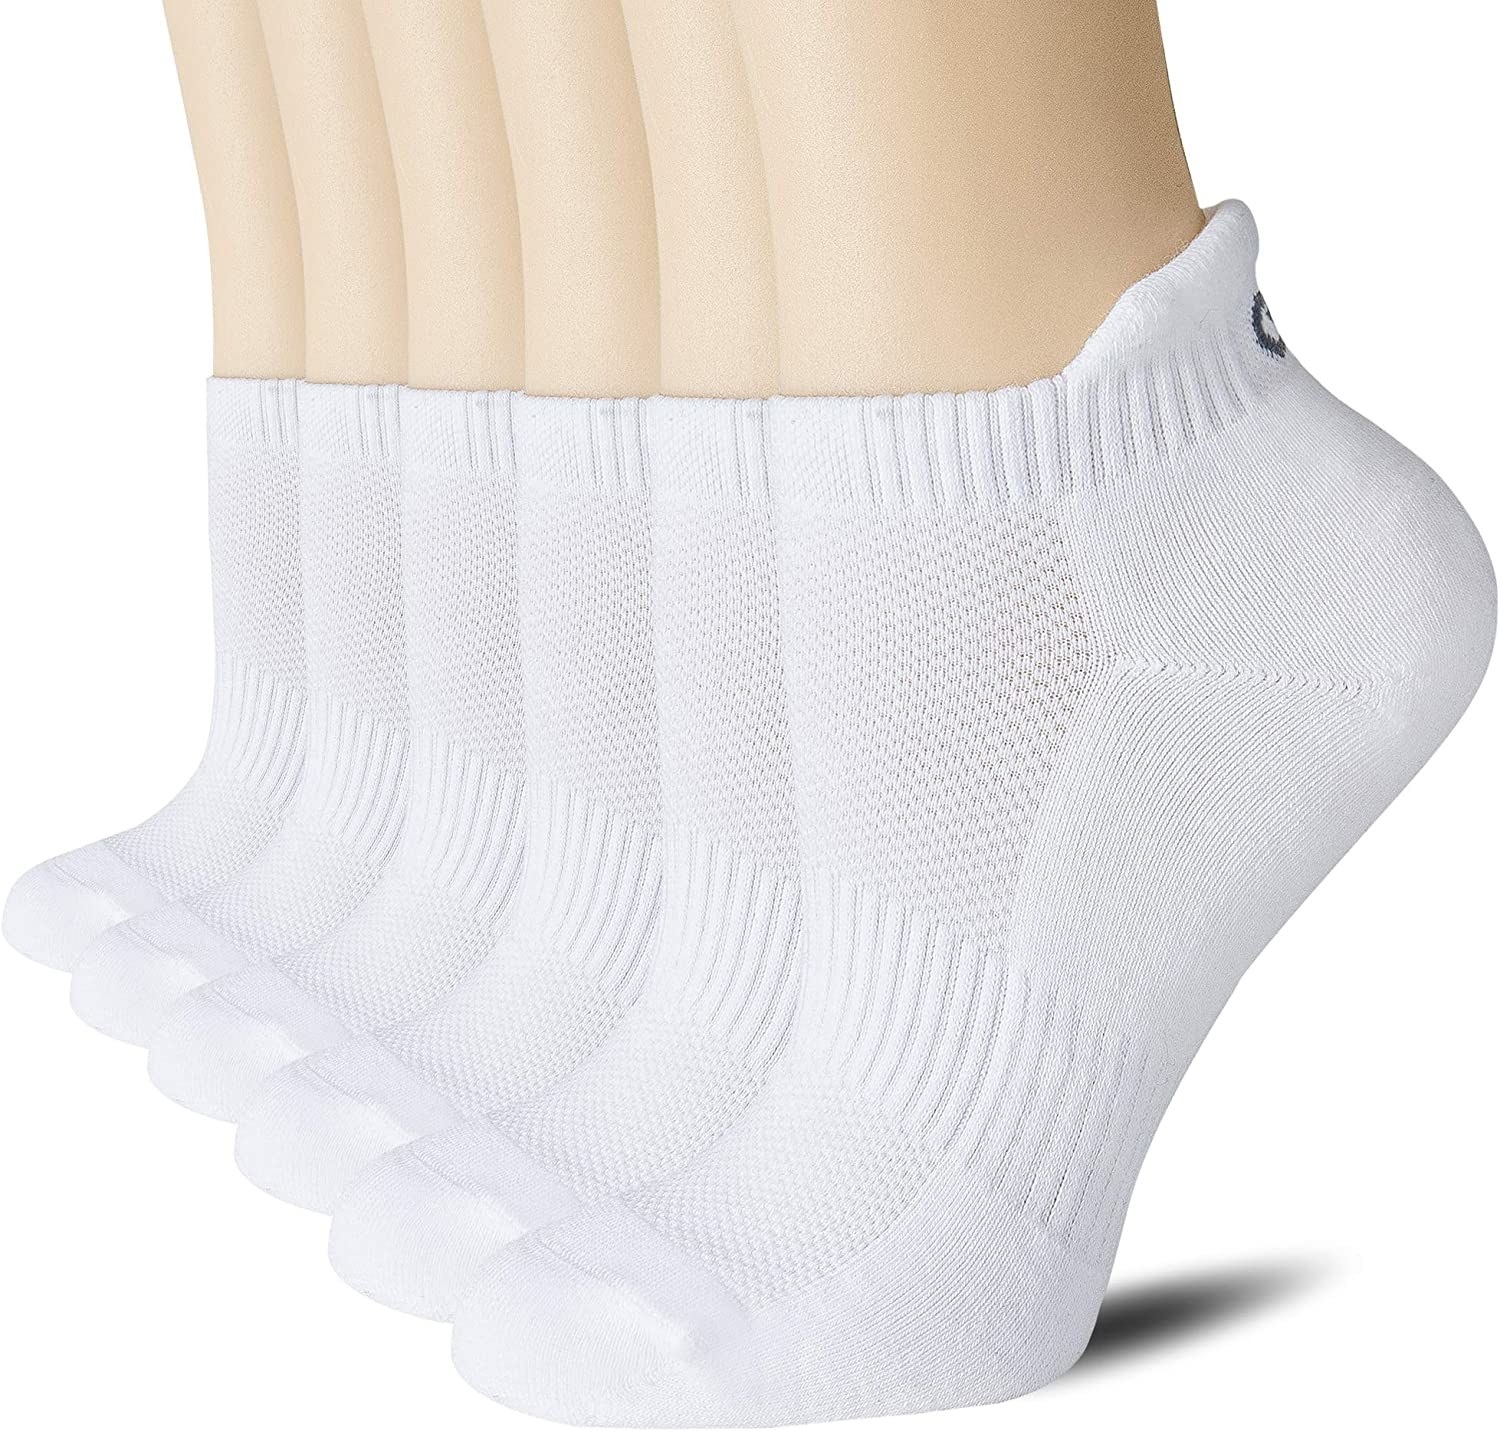 The white socks modeled on feet 